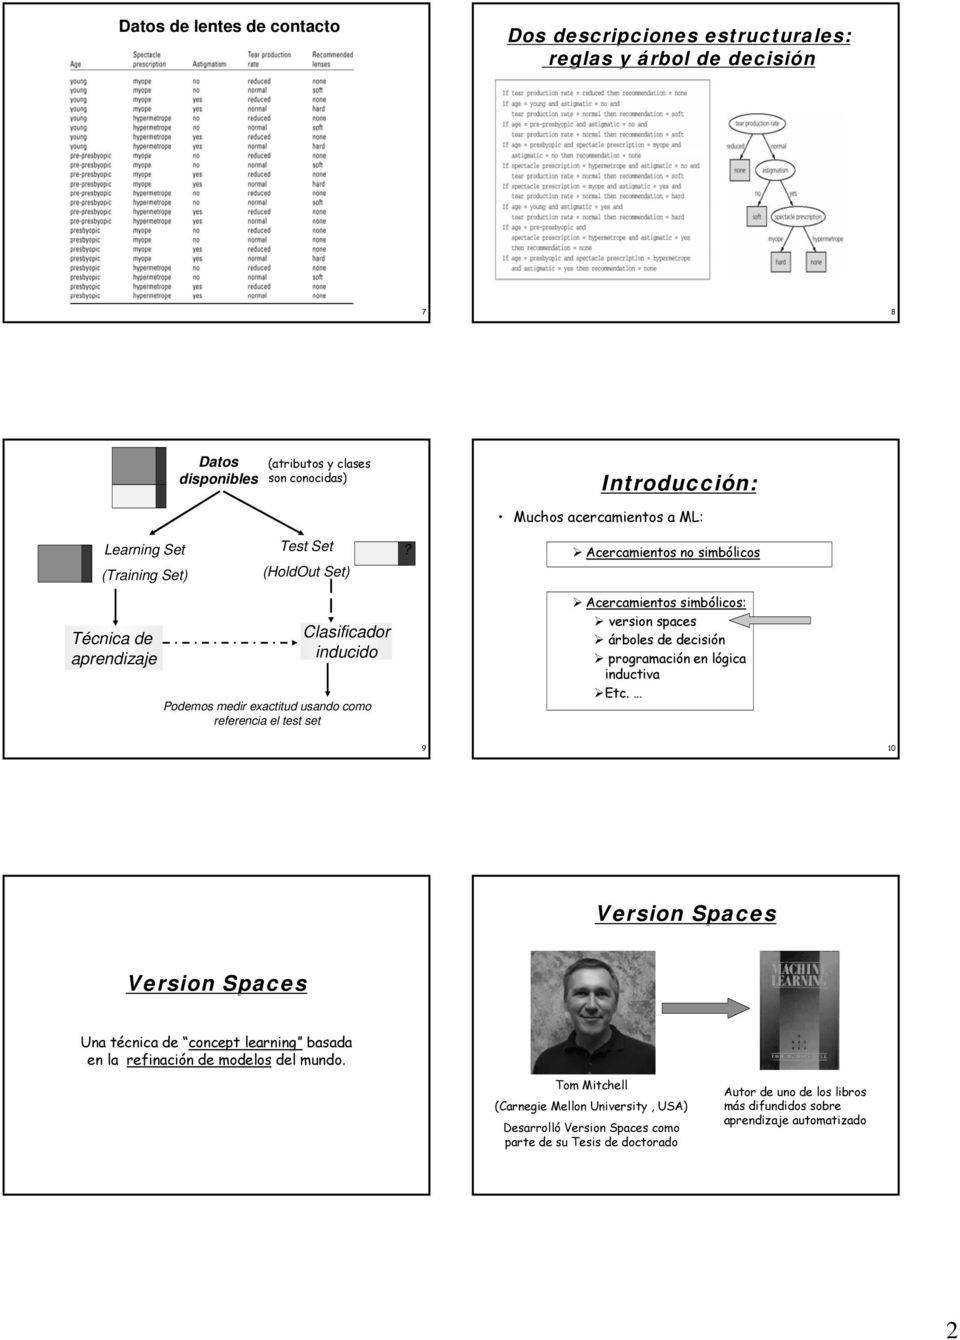 Introducción: Muchos acercamientos a ML: Acercamientos simbólicos Acercamientos simbólicos: version spaces árboles de decisión programación en lógica inductiva Etc.